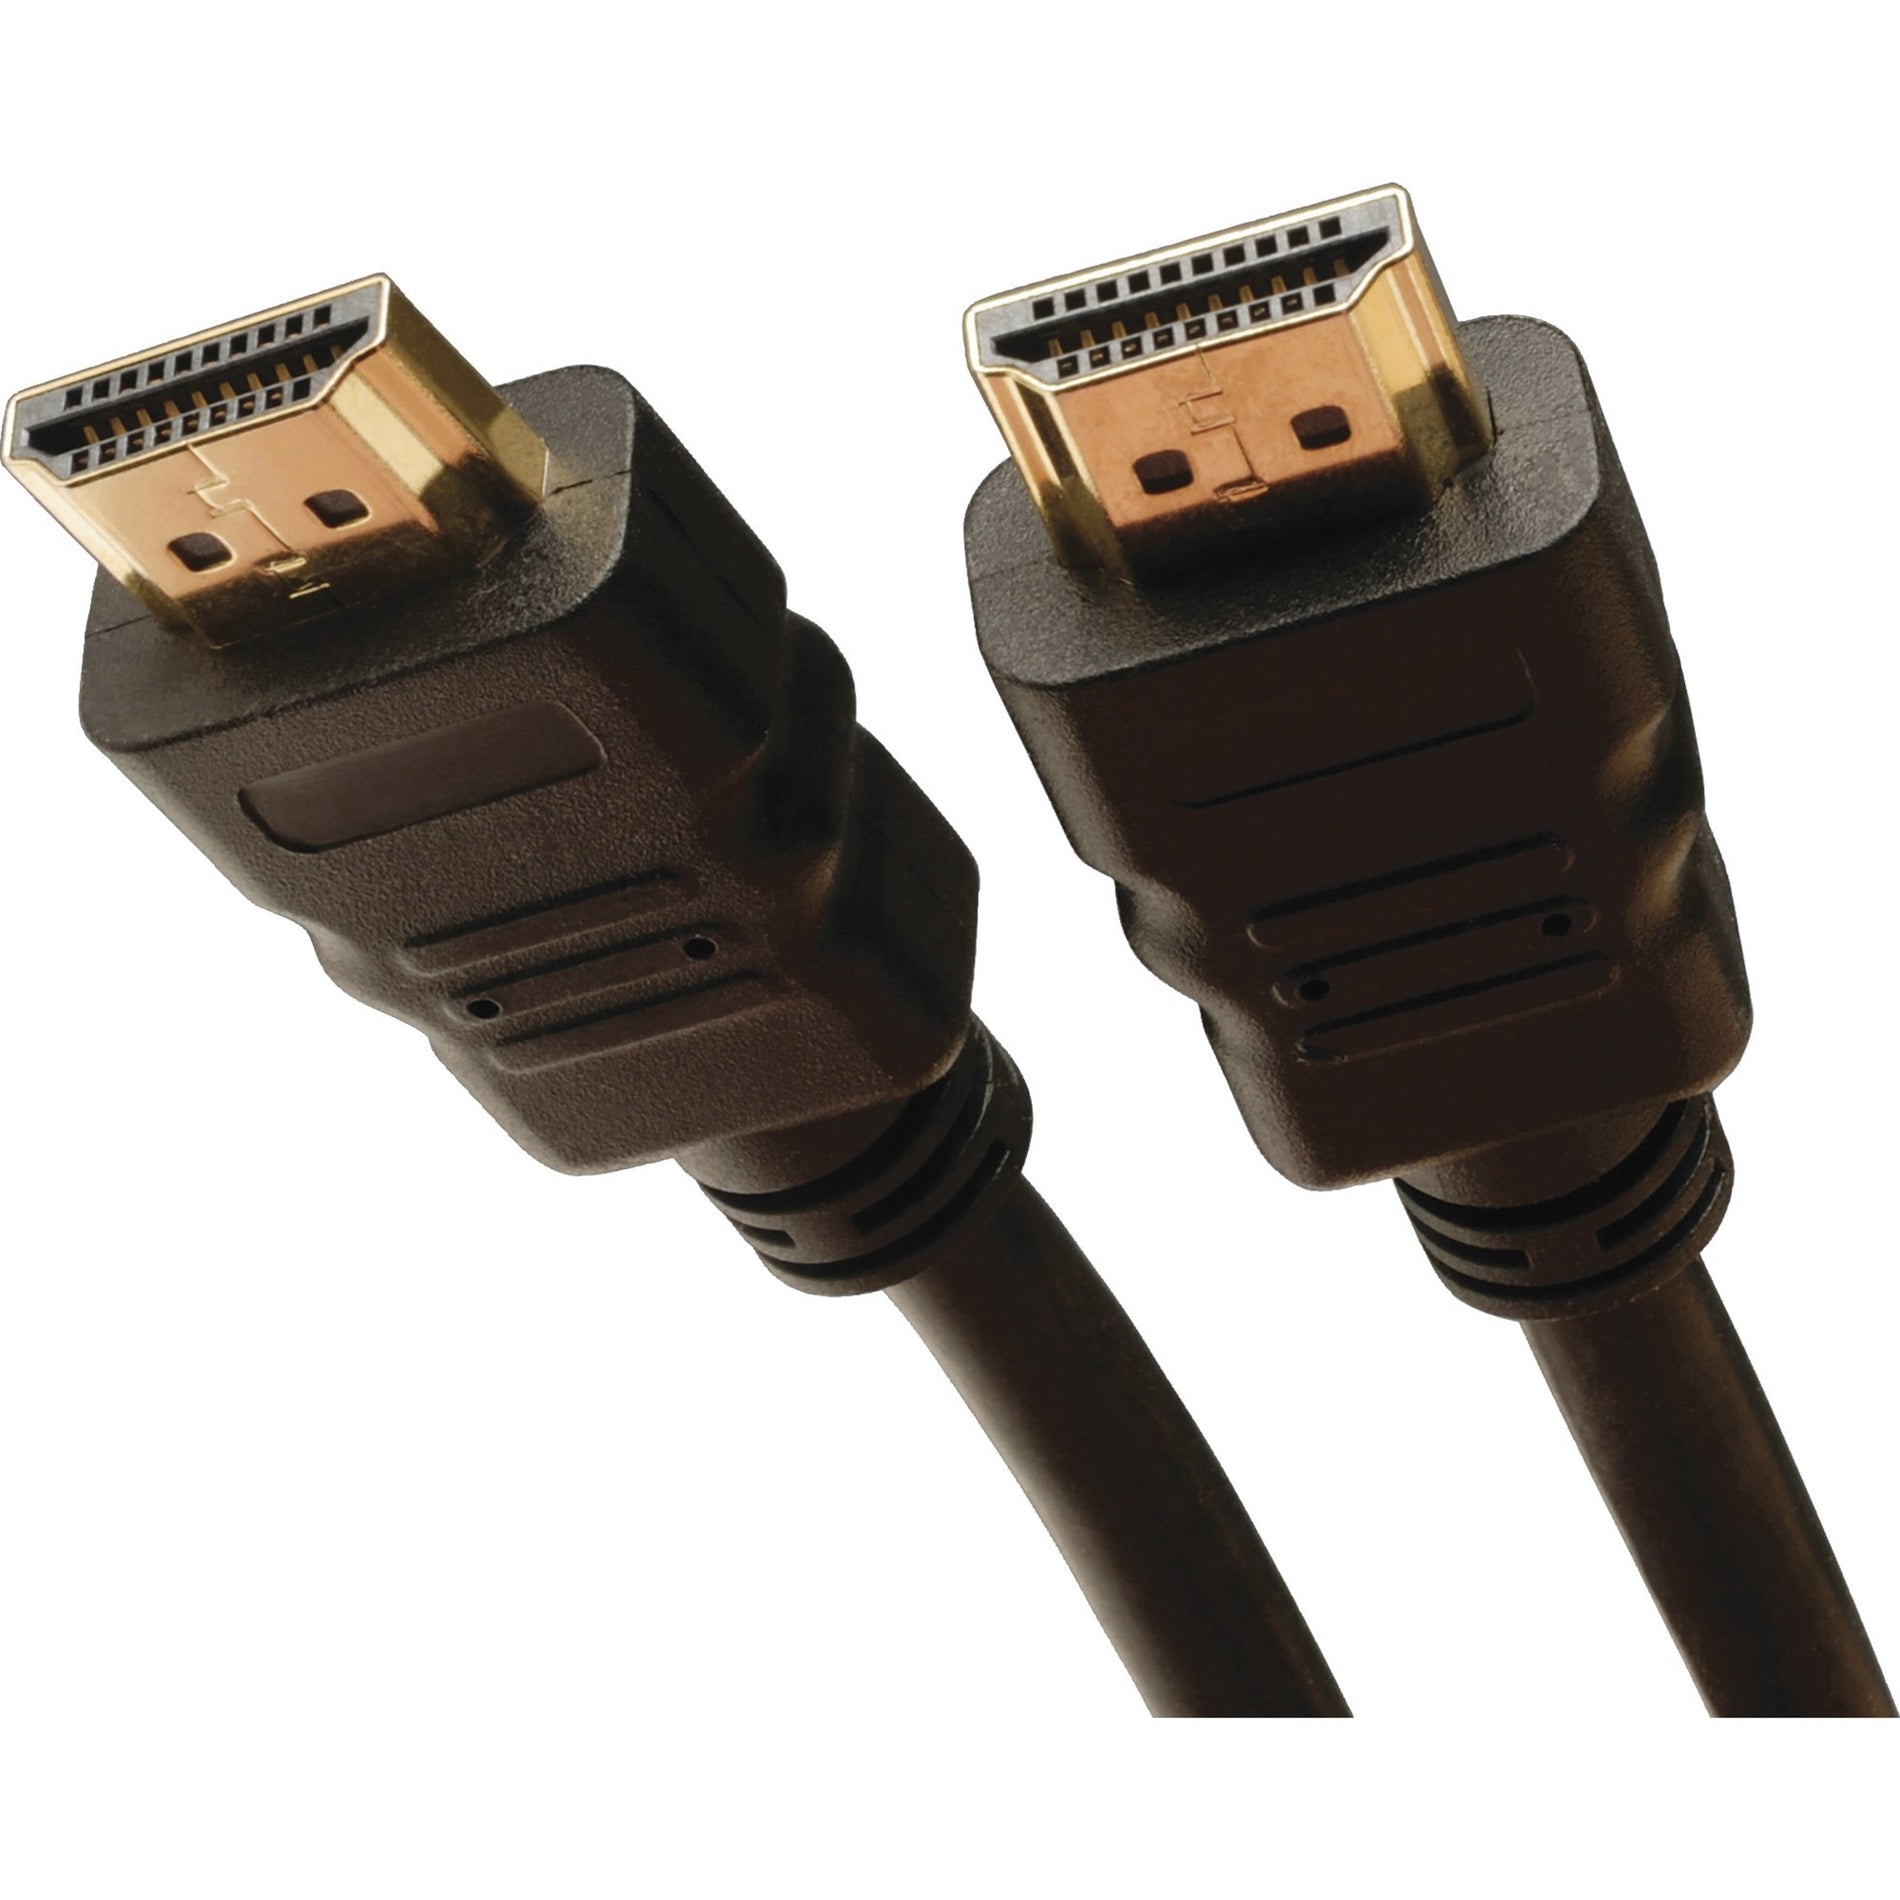 تريب لايت P569-025 كابل HDMI عالي السرعة مع إيثرنت، 25 قدم، مصبوب، موصلات مطلية بالذهب، معدل نقل بيانات 18 جيجابايت / ثانية، دقة مدعومة 3840 × 2160  تريب لايت  تريب لايت